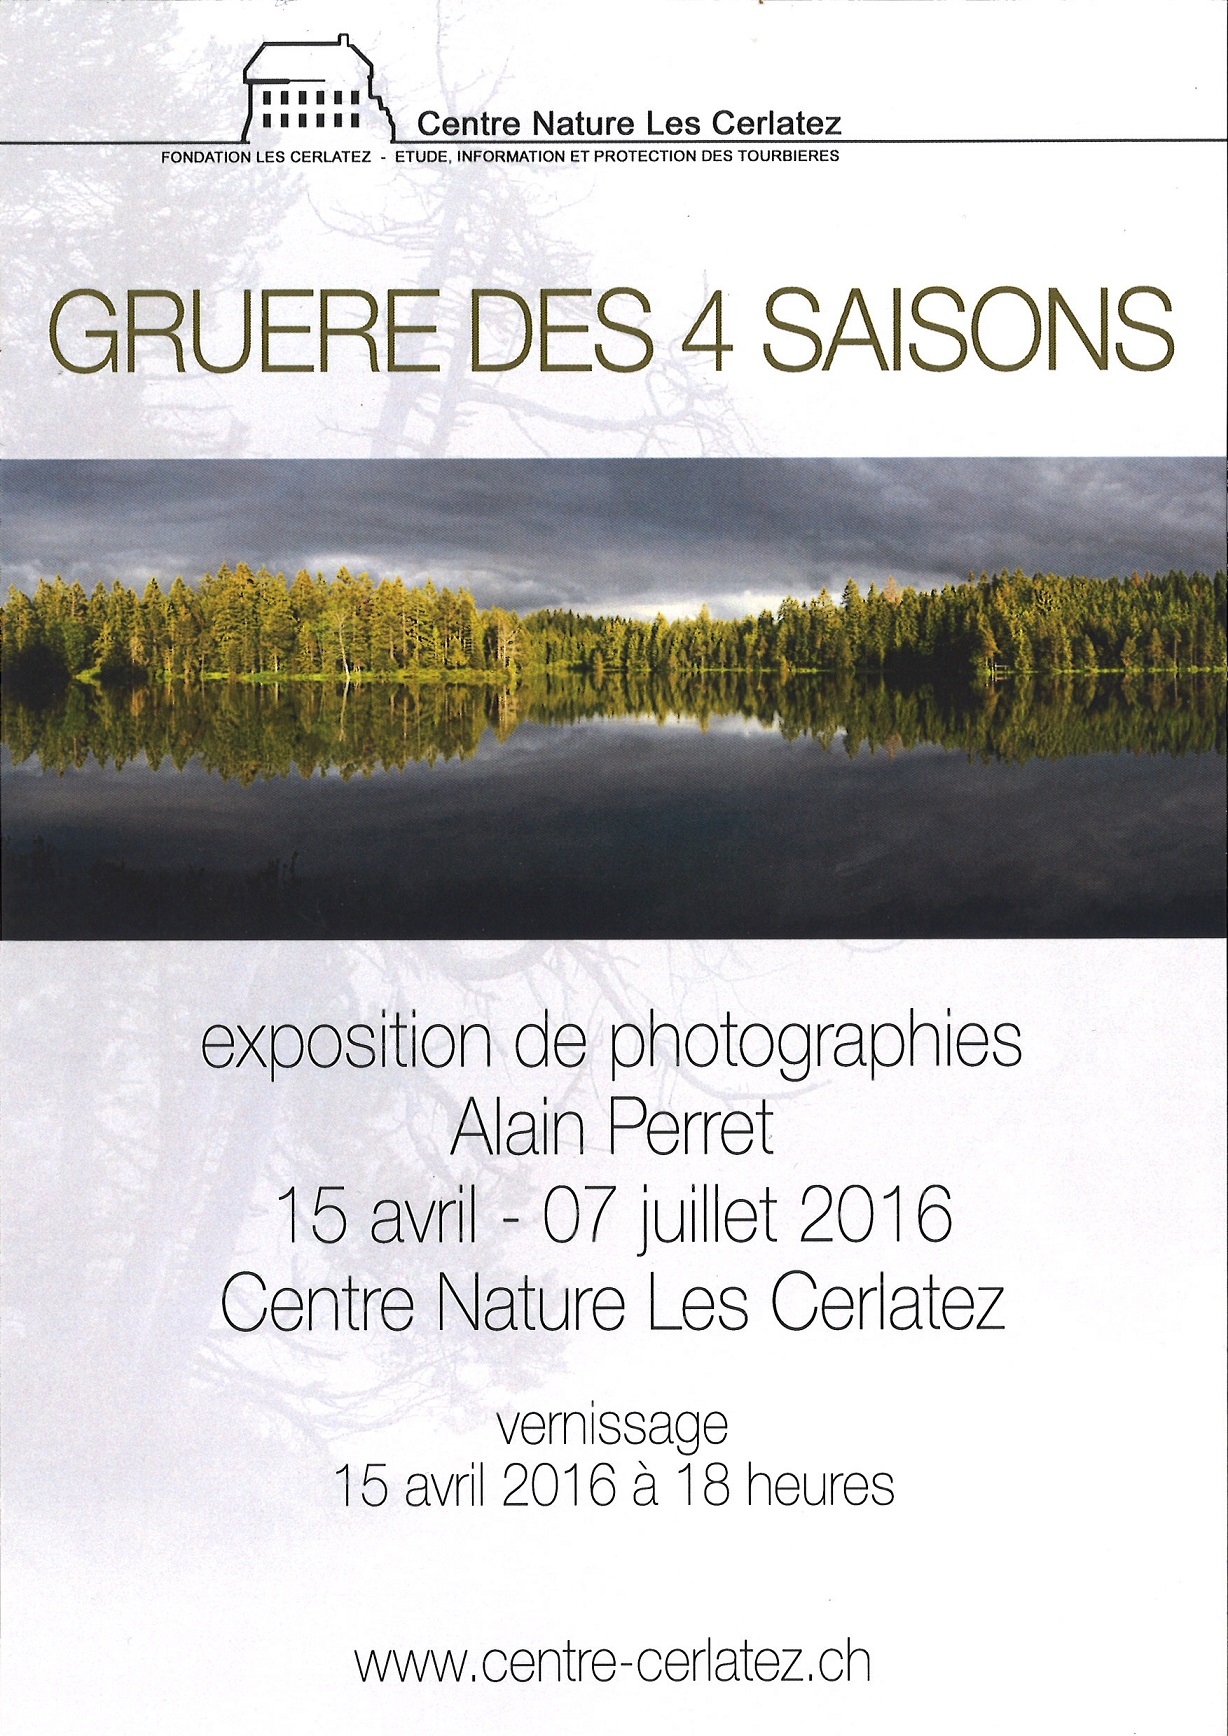 Expo Alain Perret_Gruère des 4 saisons